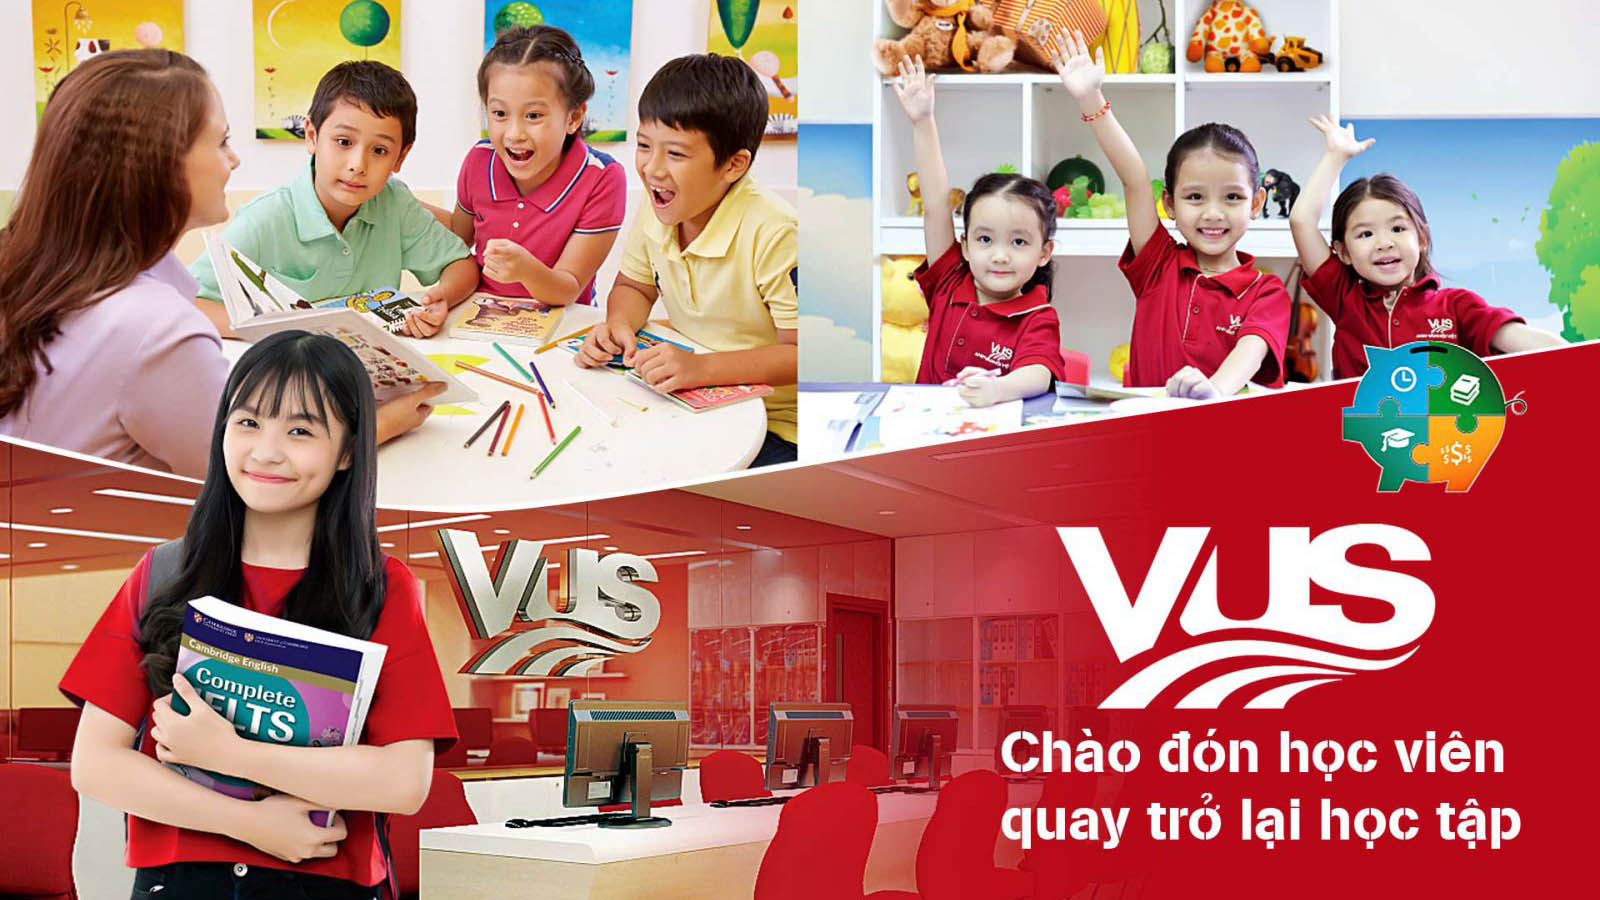 VUS là trung tâm Anh ngữ luyện thi chứng chỉ Cambridge đầu tiên tại Việt Nam